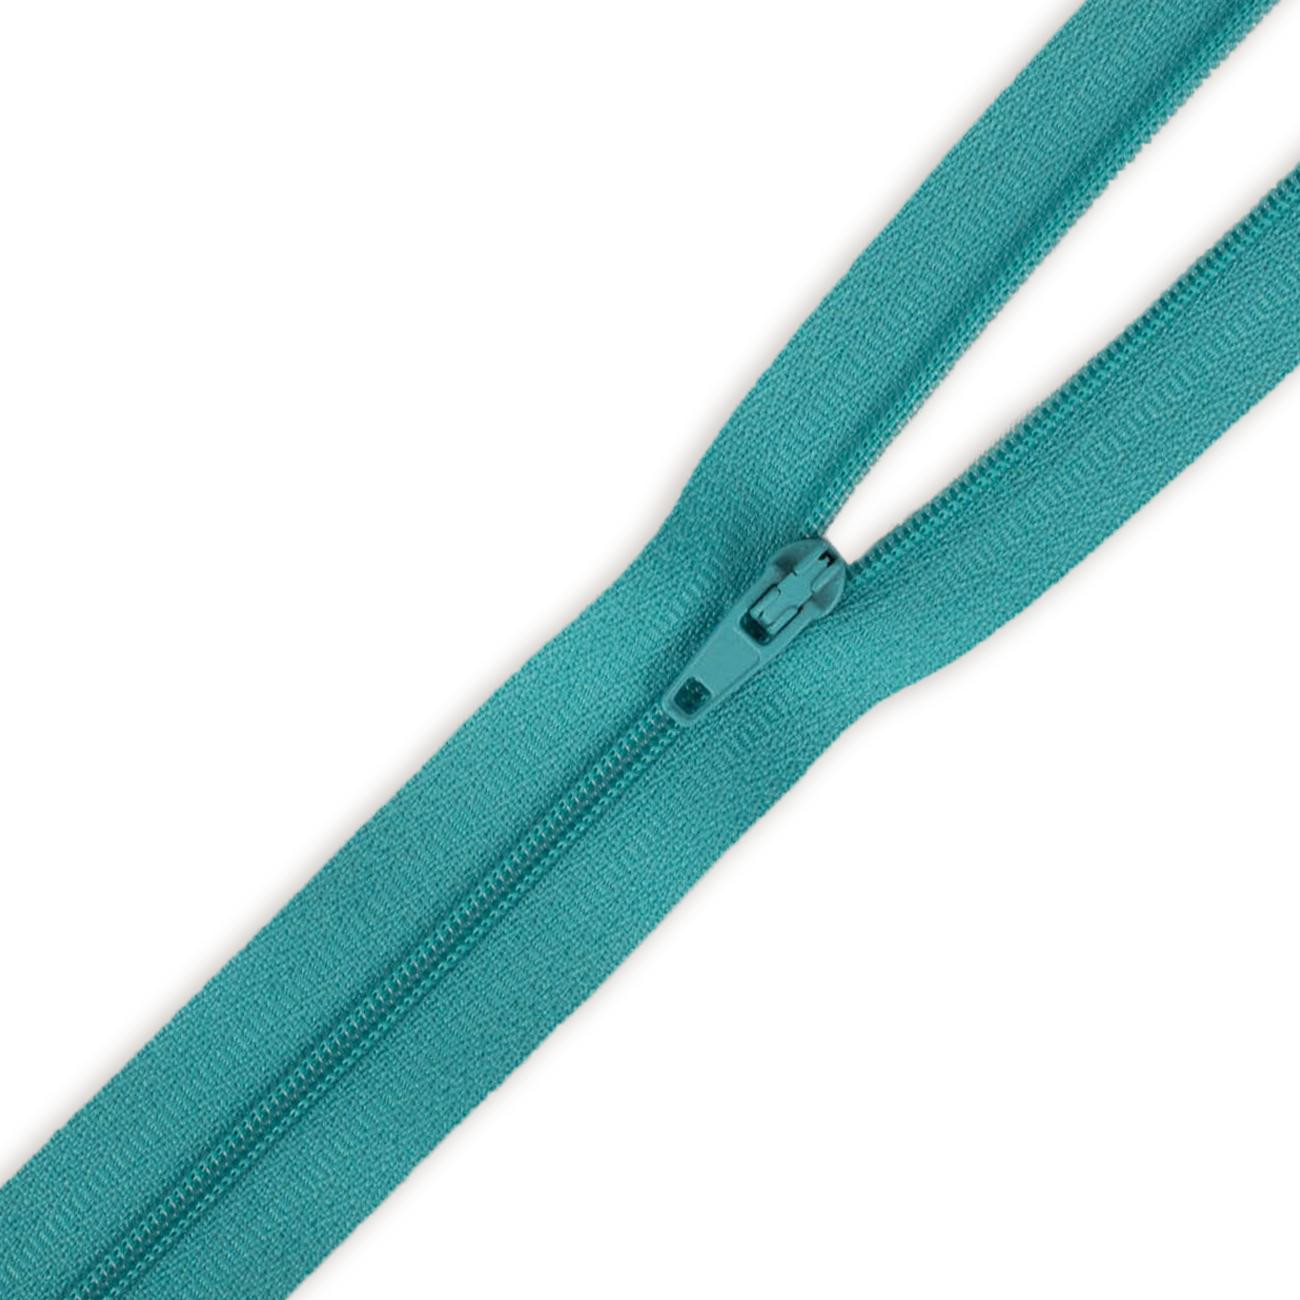 Spiral-Reißverschluss 14cm nicht teilbar - smaragd